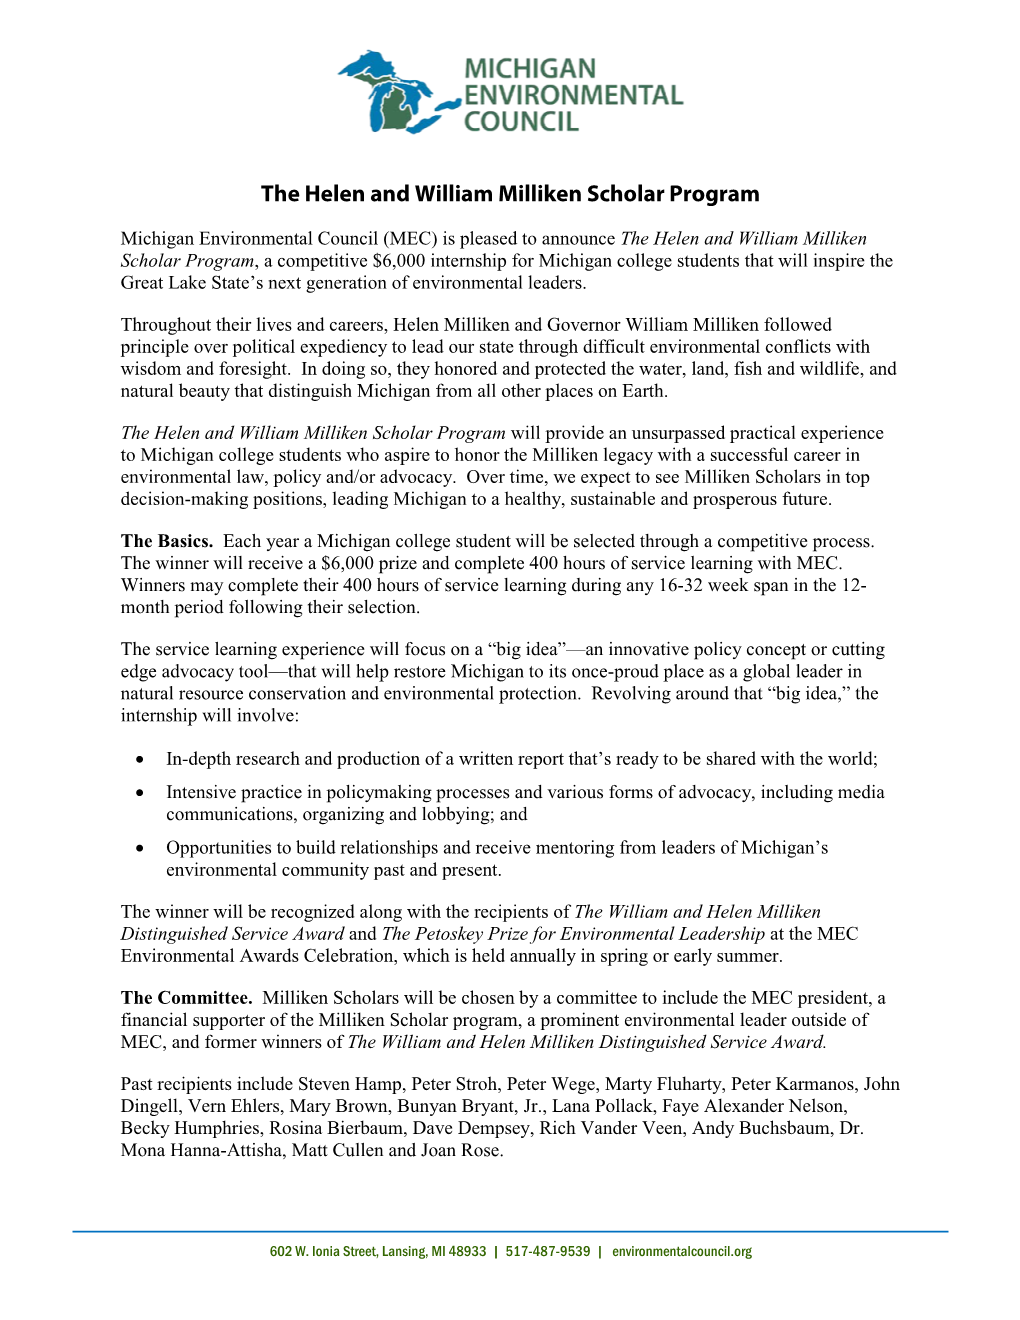 The Helen and William Milliken Scholar Program